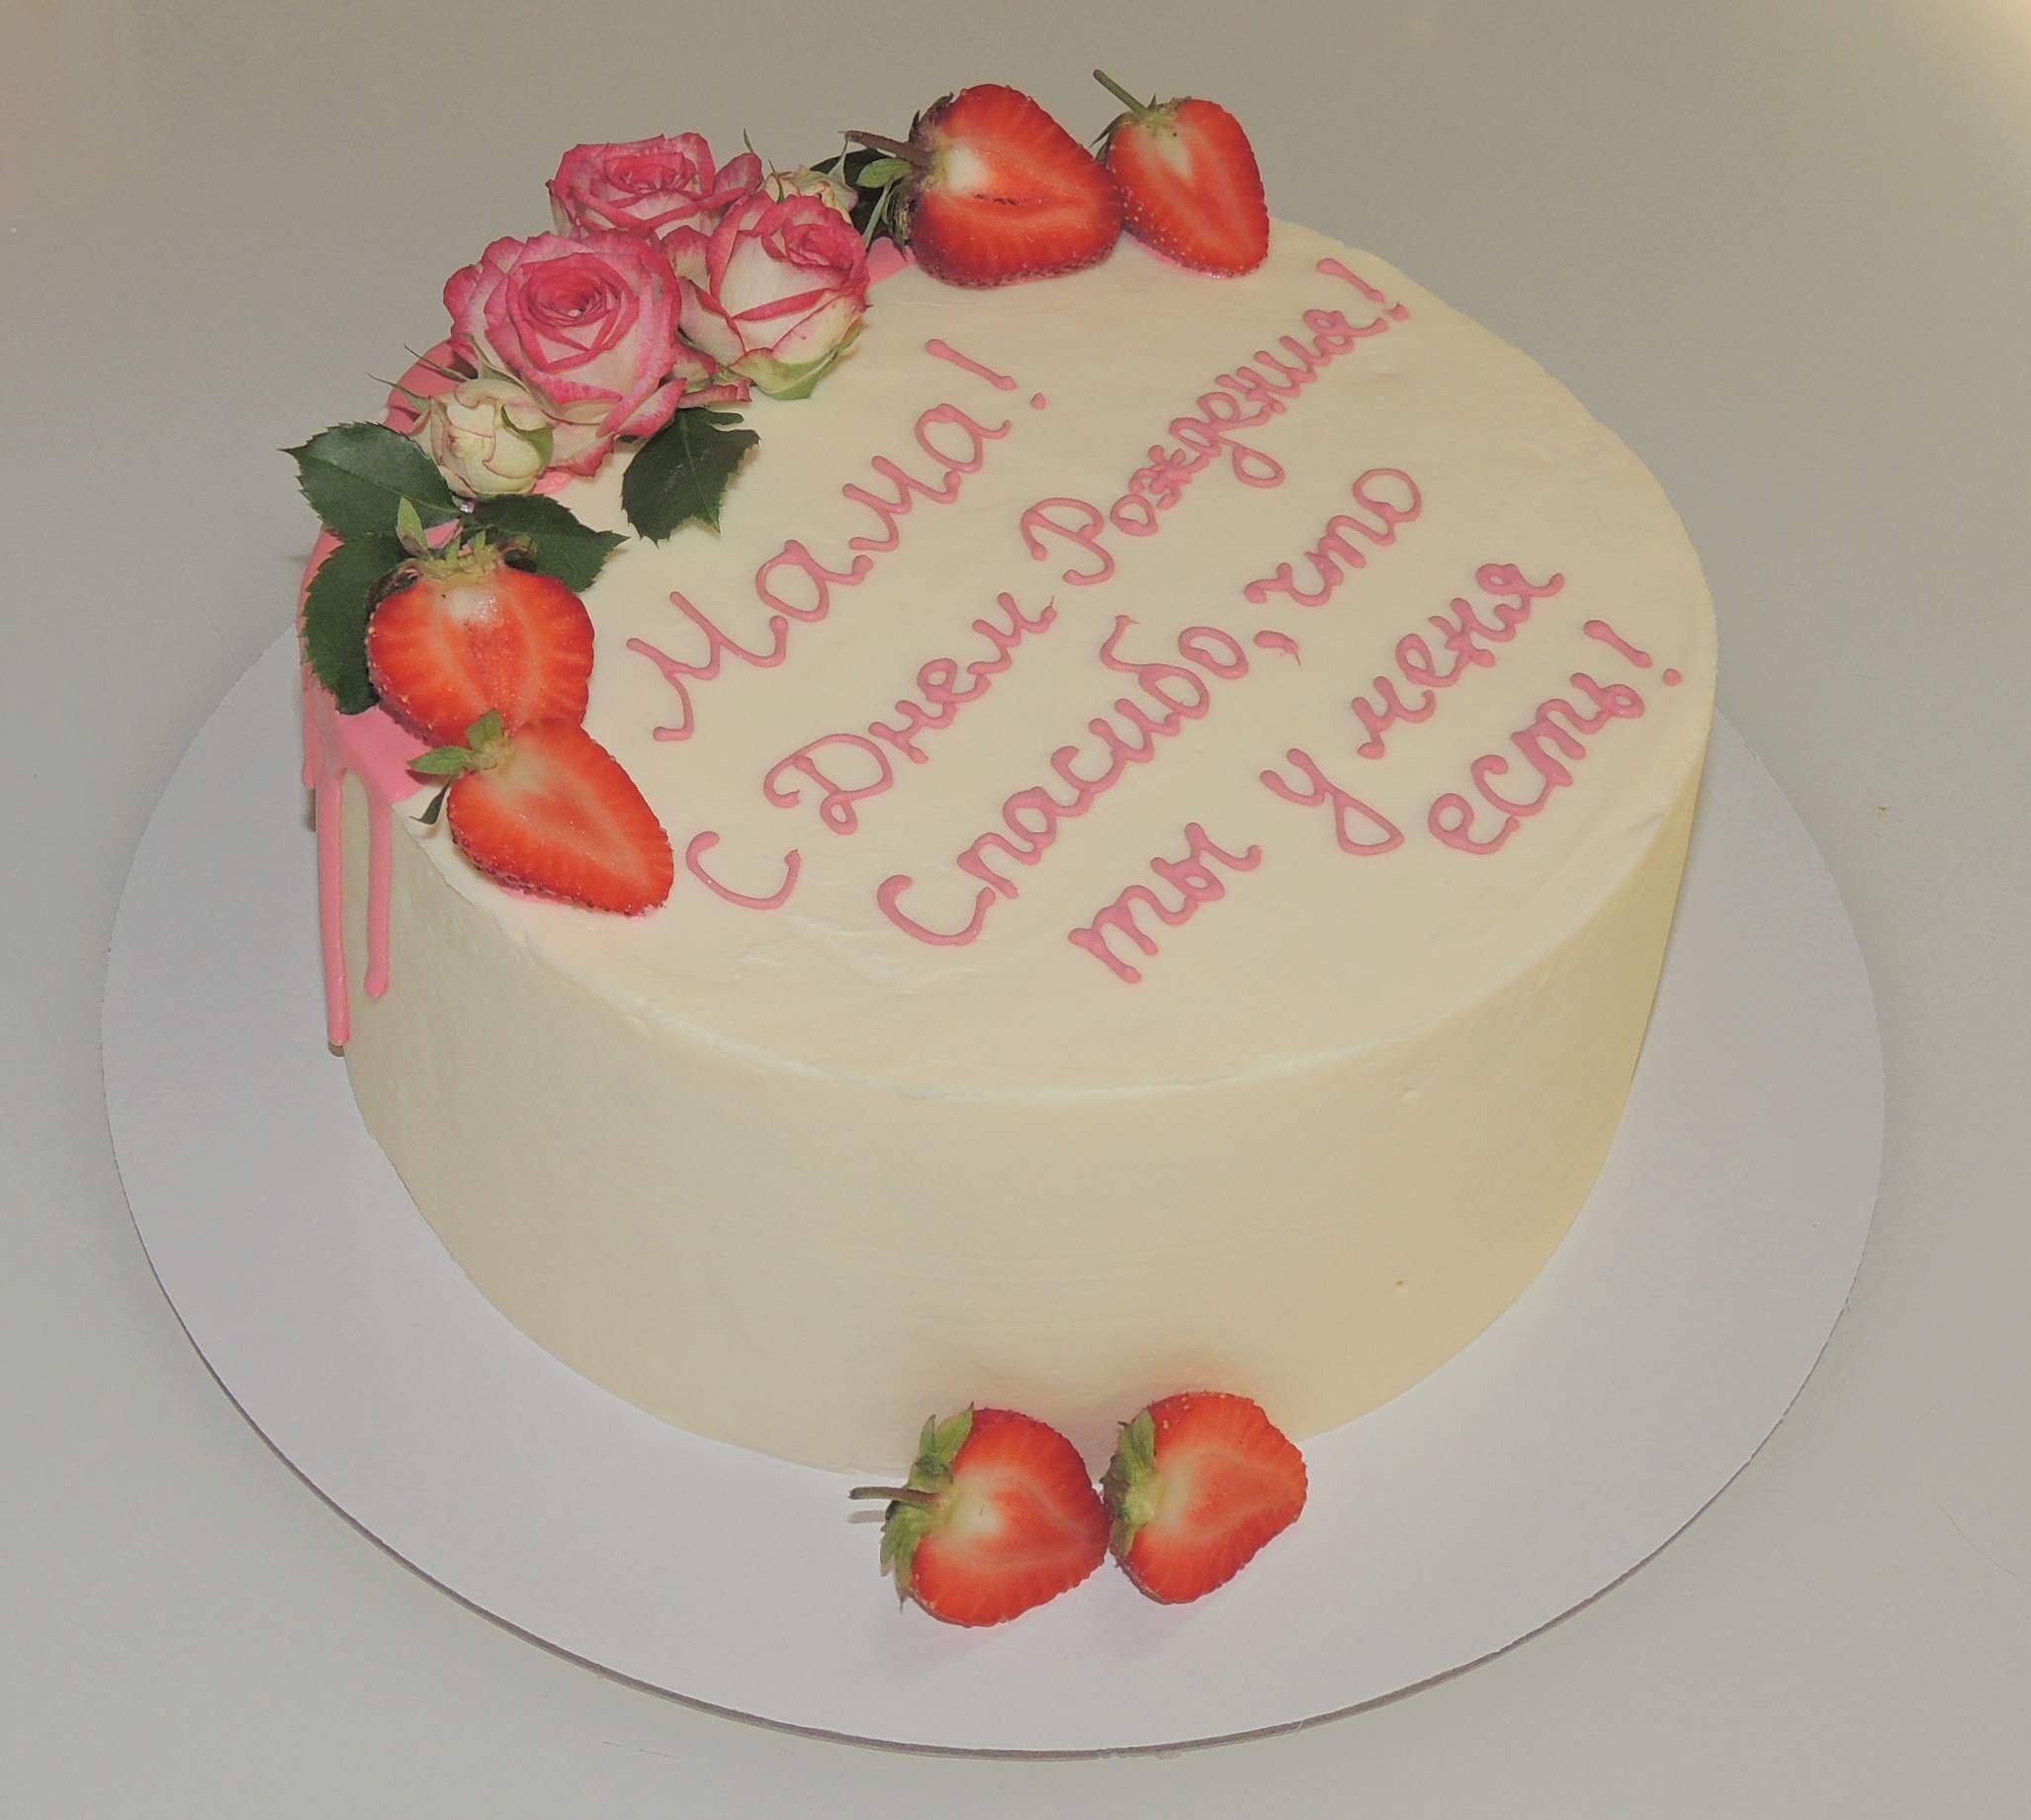 Надписи на торт с днем рождения девушке